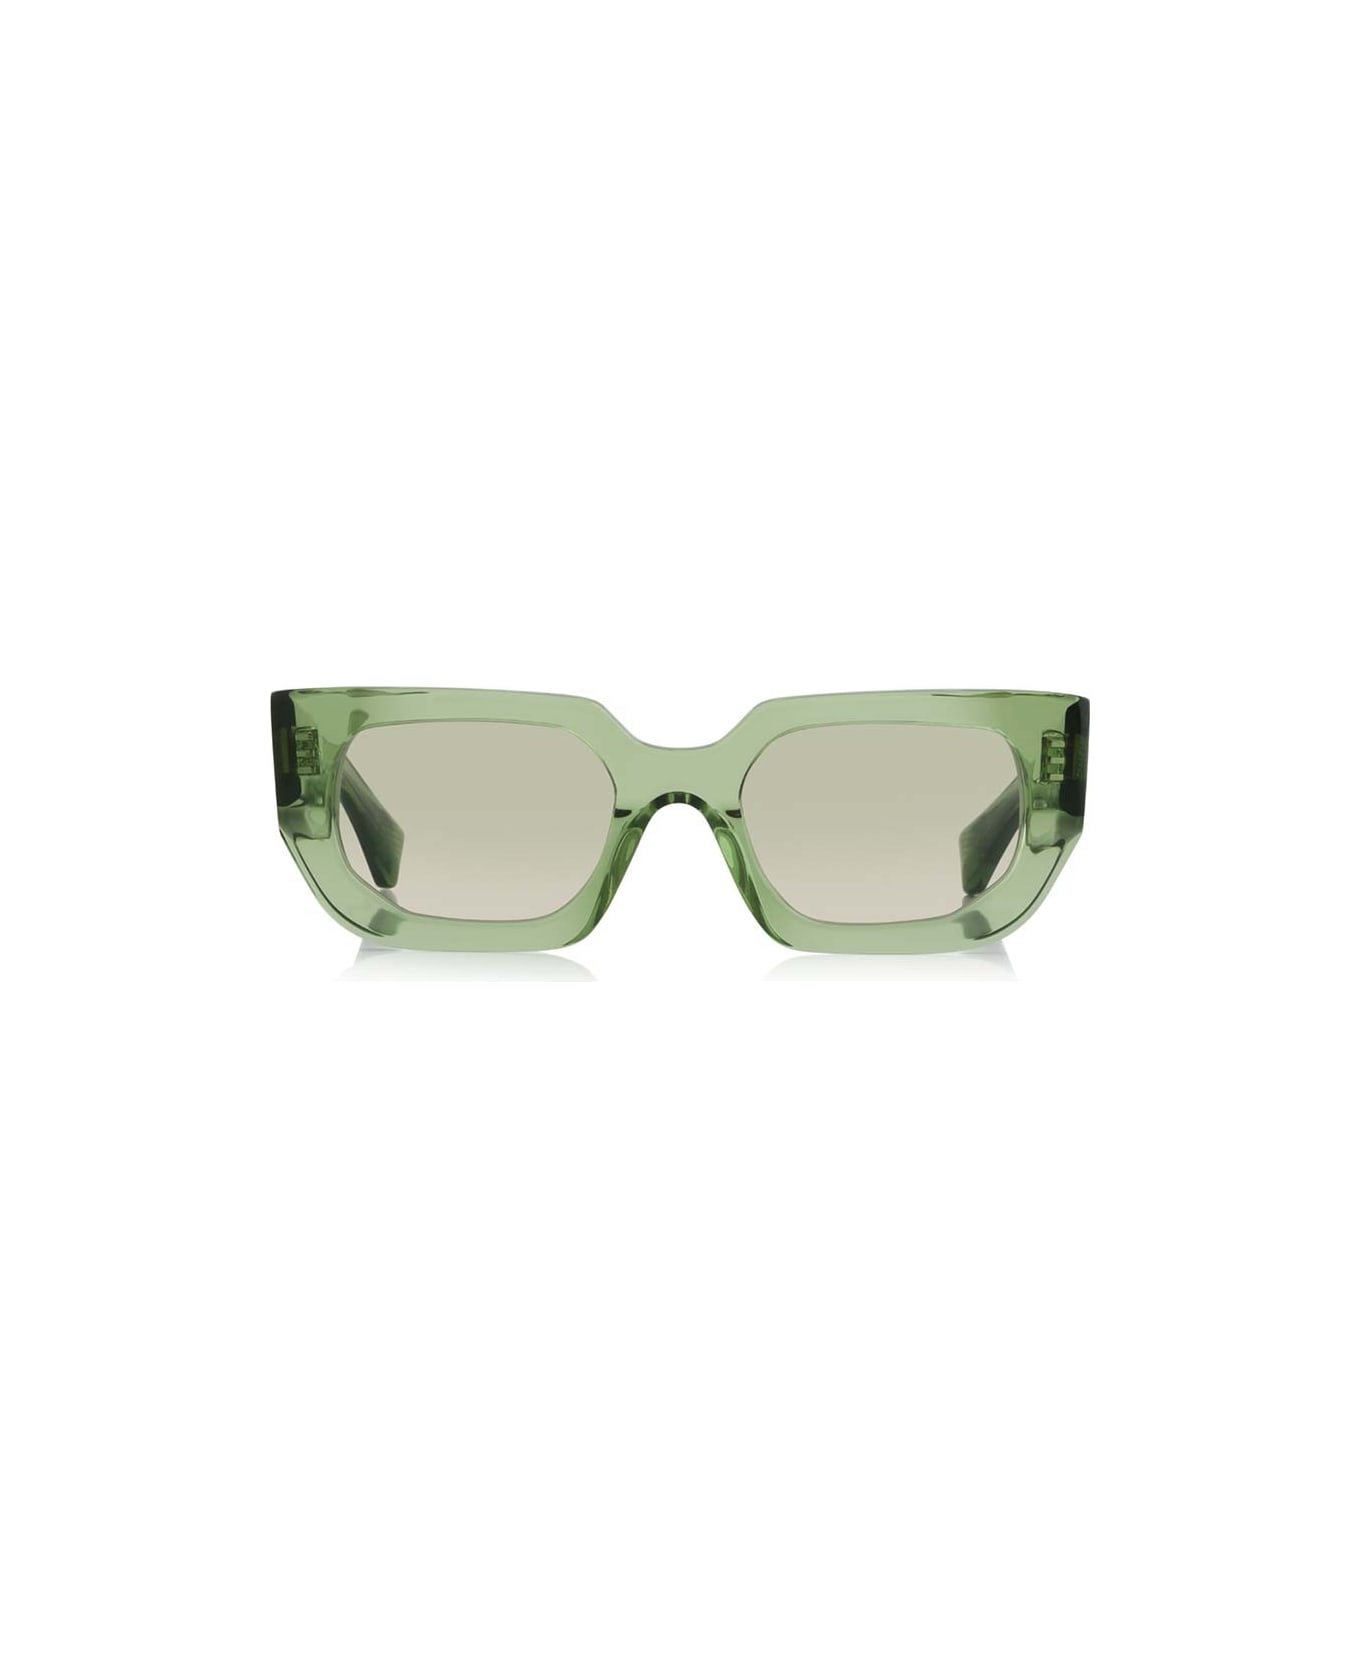 Robert La Roche Sunglasses - Verde/Grigio